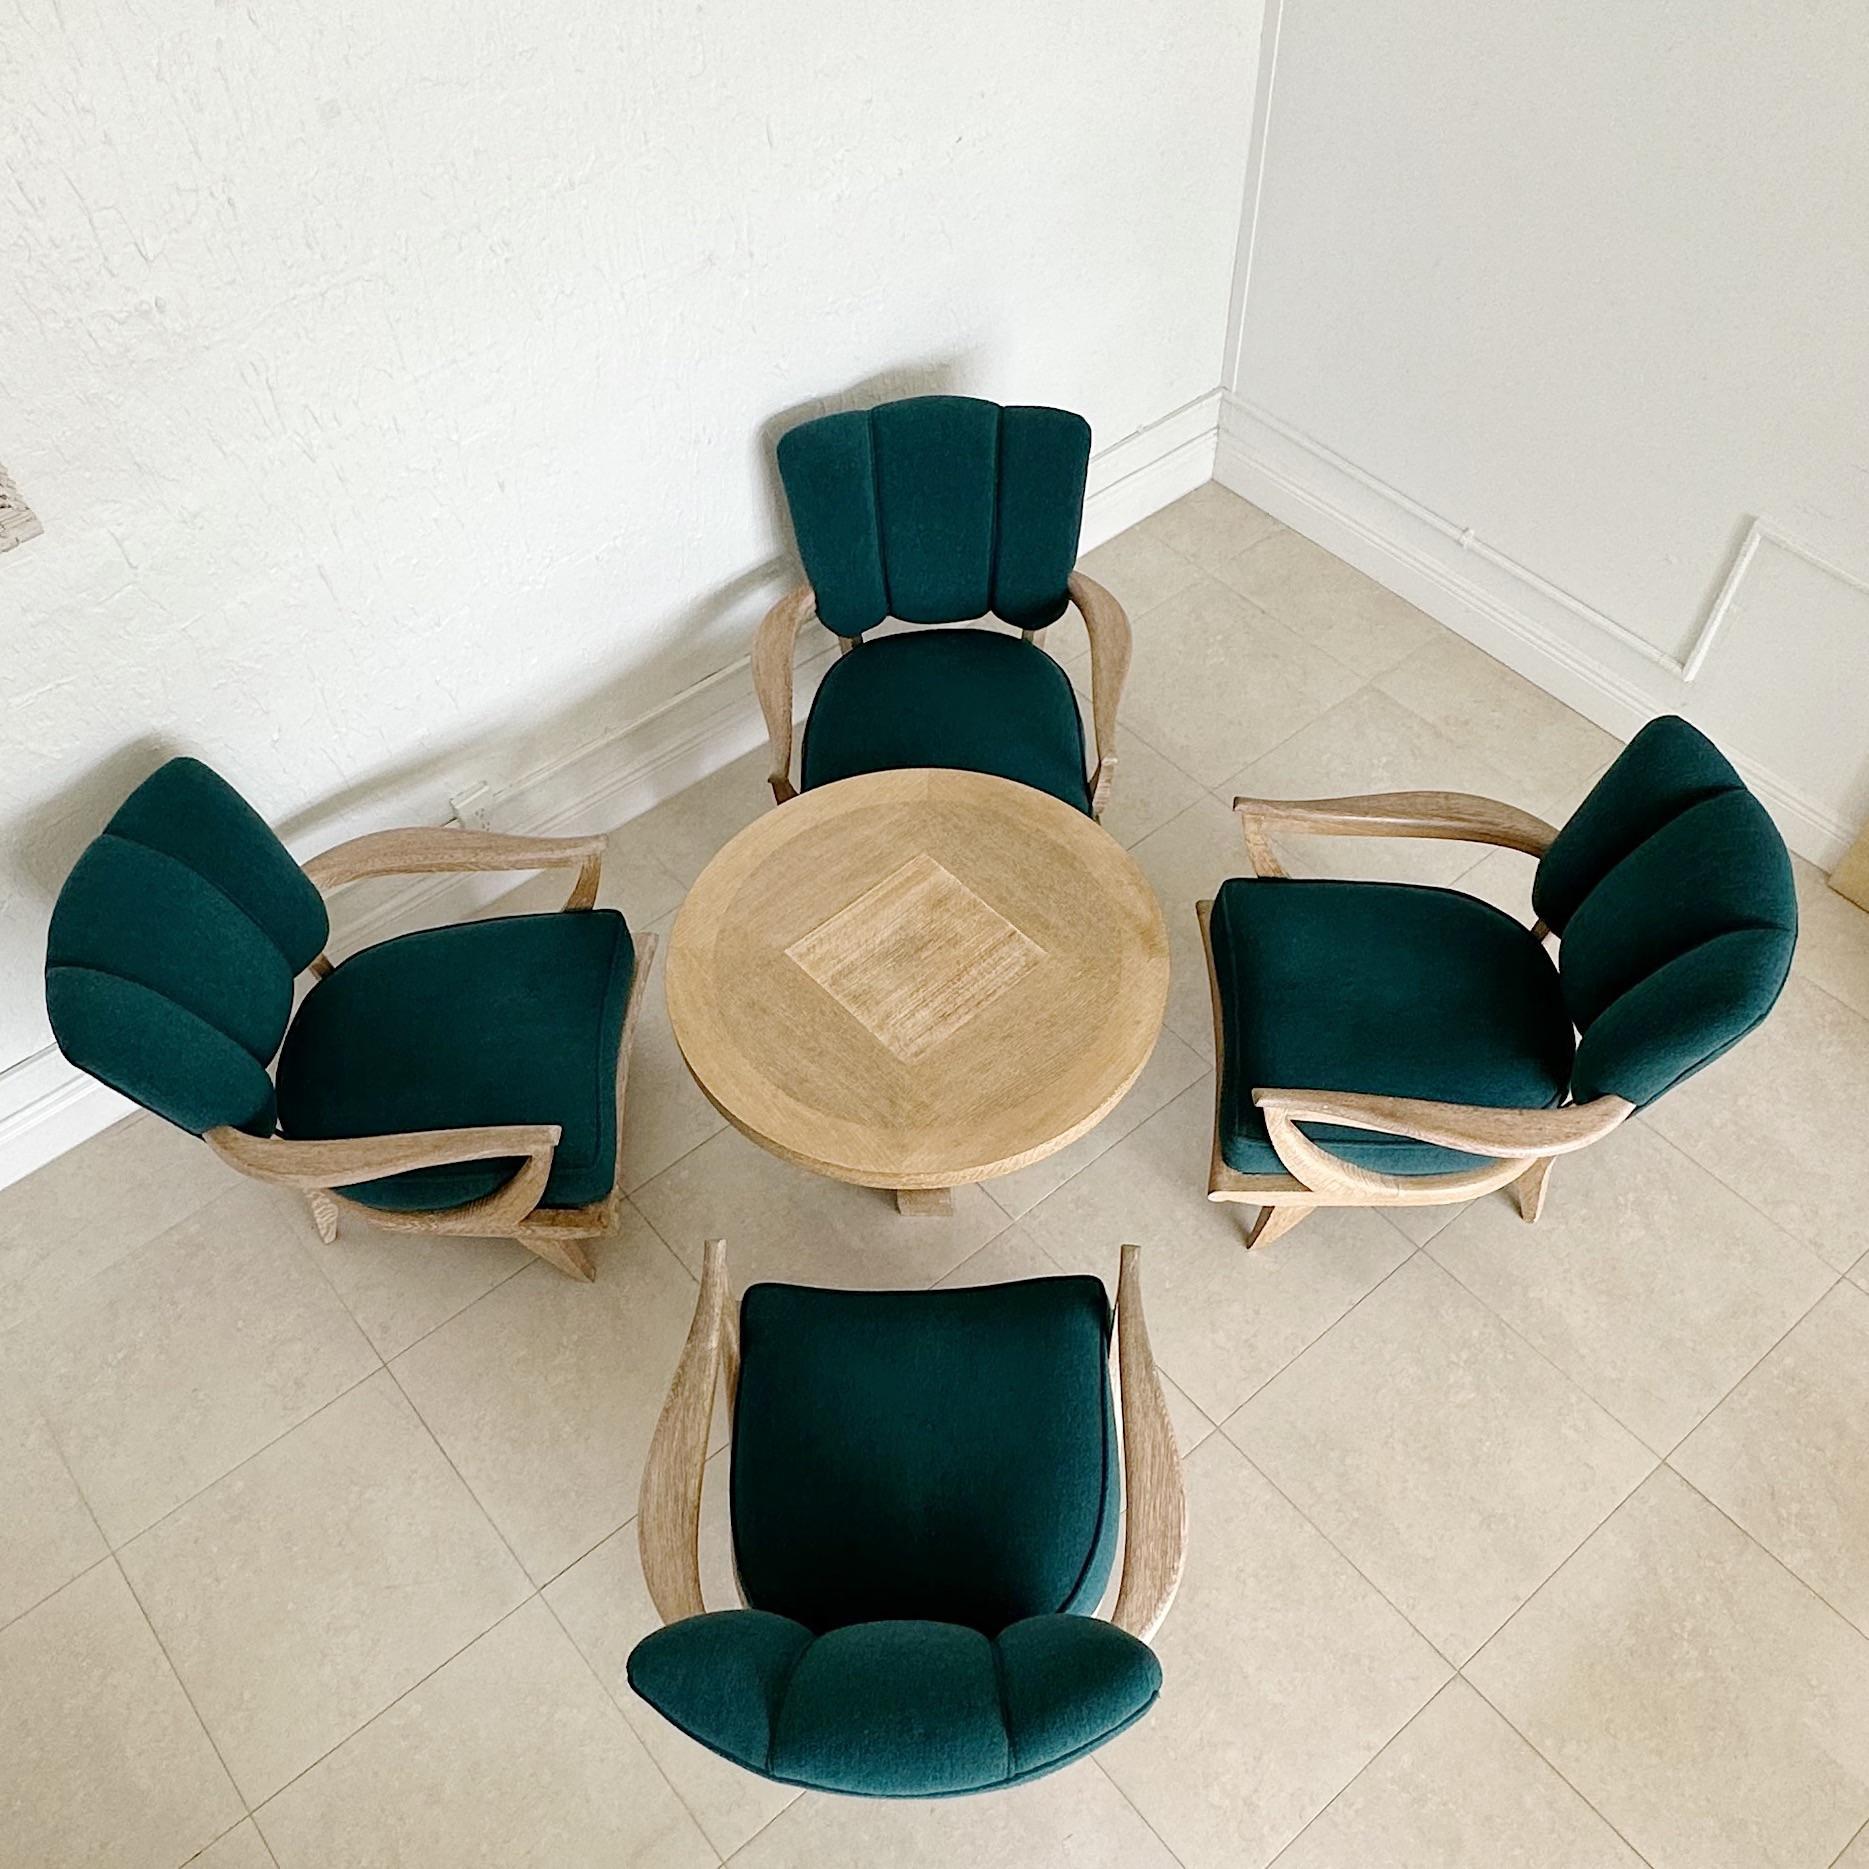 Ensemble de conversation en chêne cérusé et chaulé par Etienne Henri Martin, France 1950's, composé de quatre chaises et d'une table, il est extrêmement rare de trouver cet ensemble avec la table. Le tout dans le tissu d'origine.
La table mesure